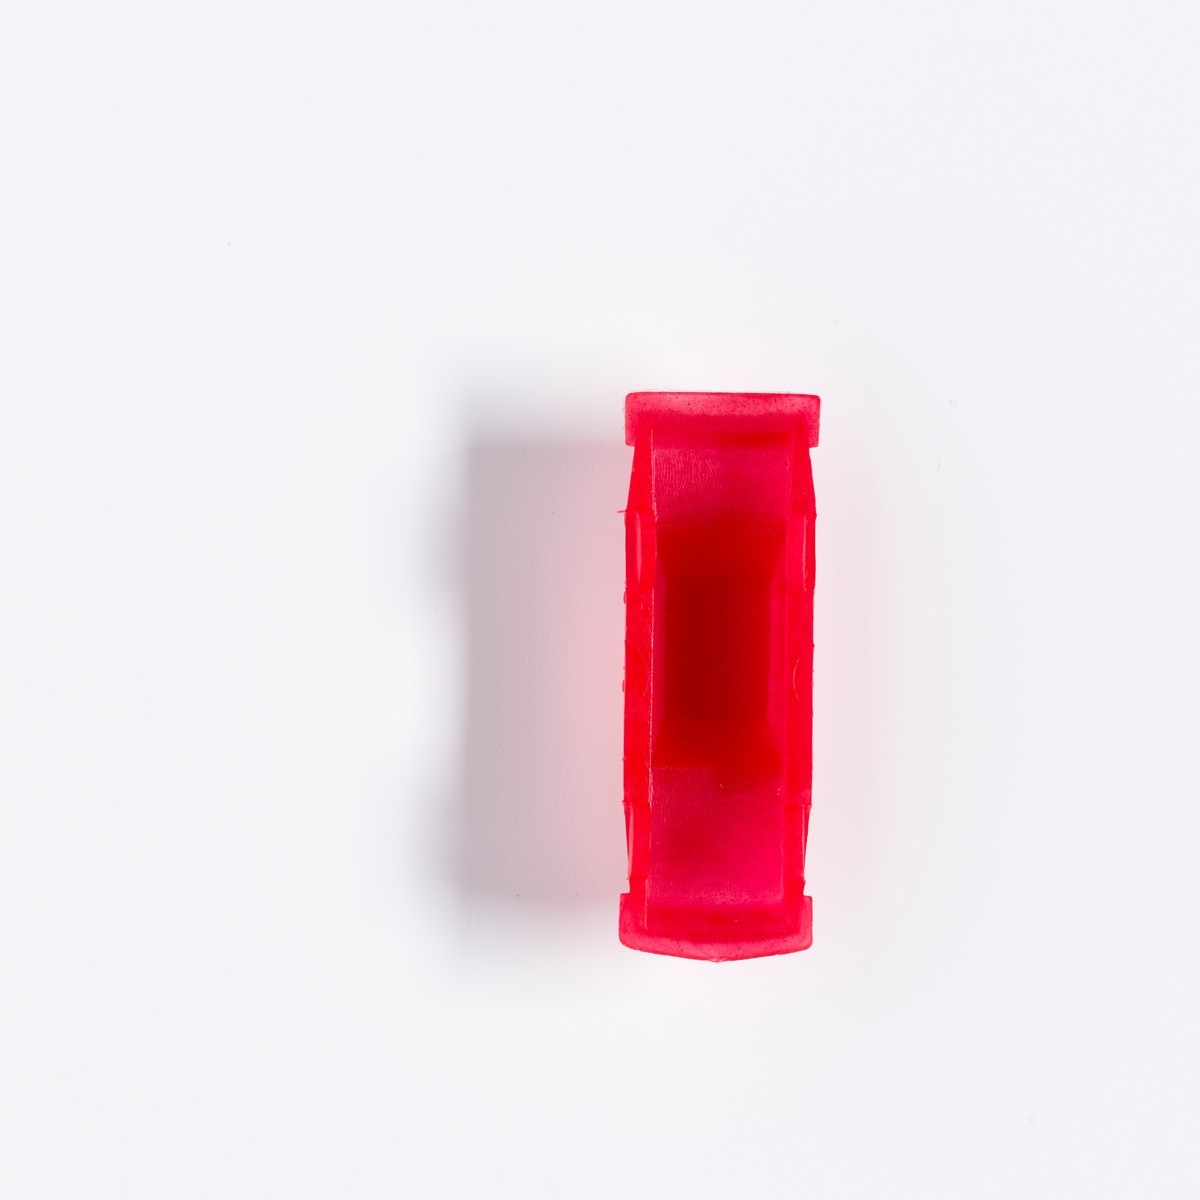 En spillbrikke i rød plast formet som en bil. 

Brettspillet fungerer på samme måten som spillet Monopol. Her er spillet plassert i Skedsmo kommune og man kan kjøpe lokale firmaer og butikker. Spillet er produsert av Strømmen menighet i samarbeid med Tria-Aktiv. Overskuddet fra salget gikk til ungdomsaktiviteter.